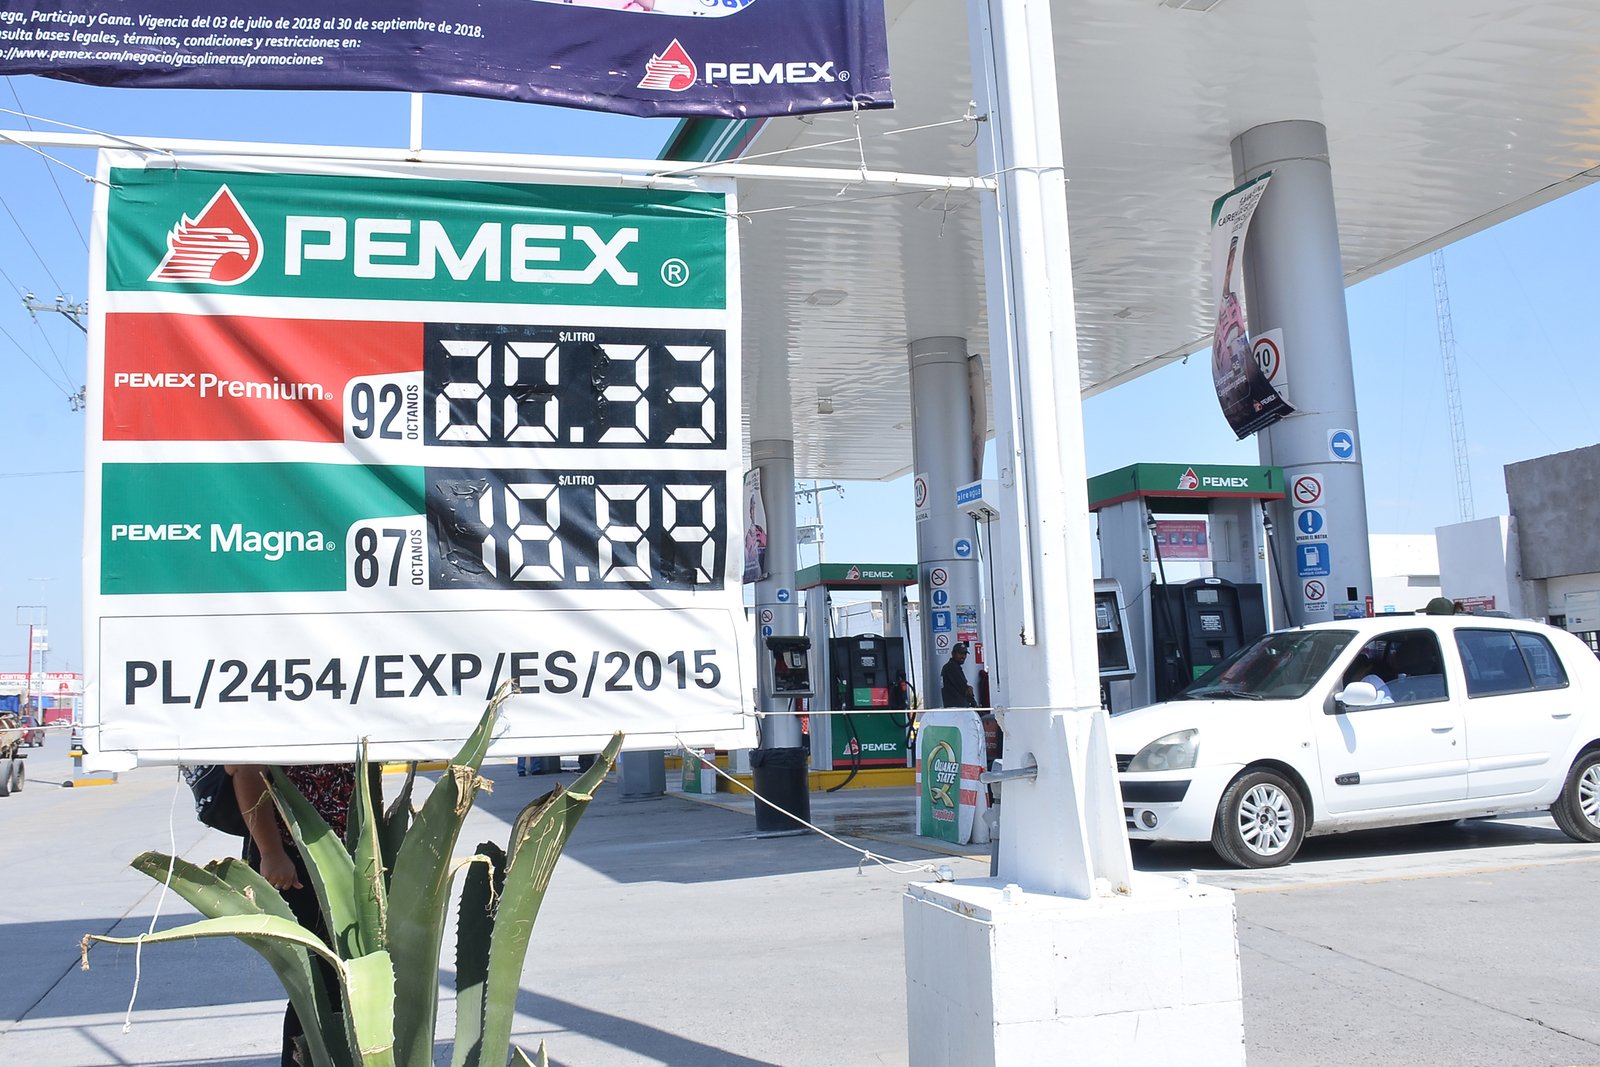 Gasolina, en su segunda semana sin subsidios